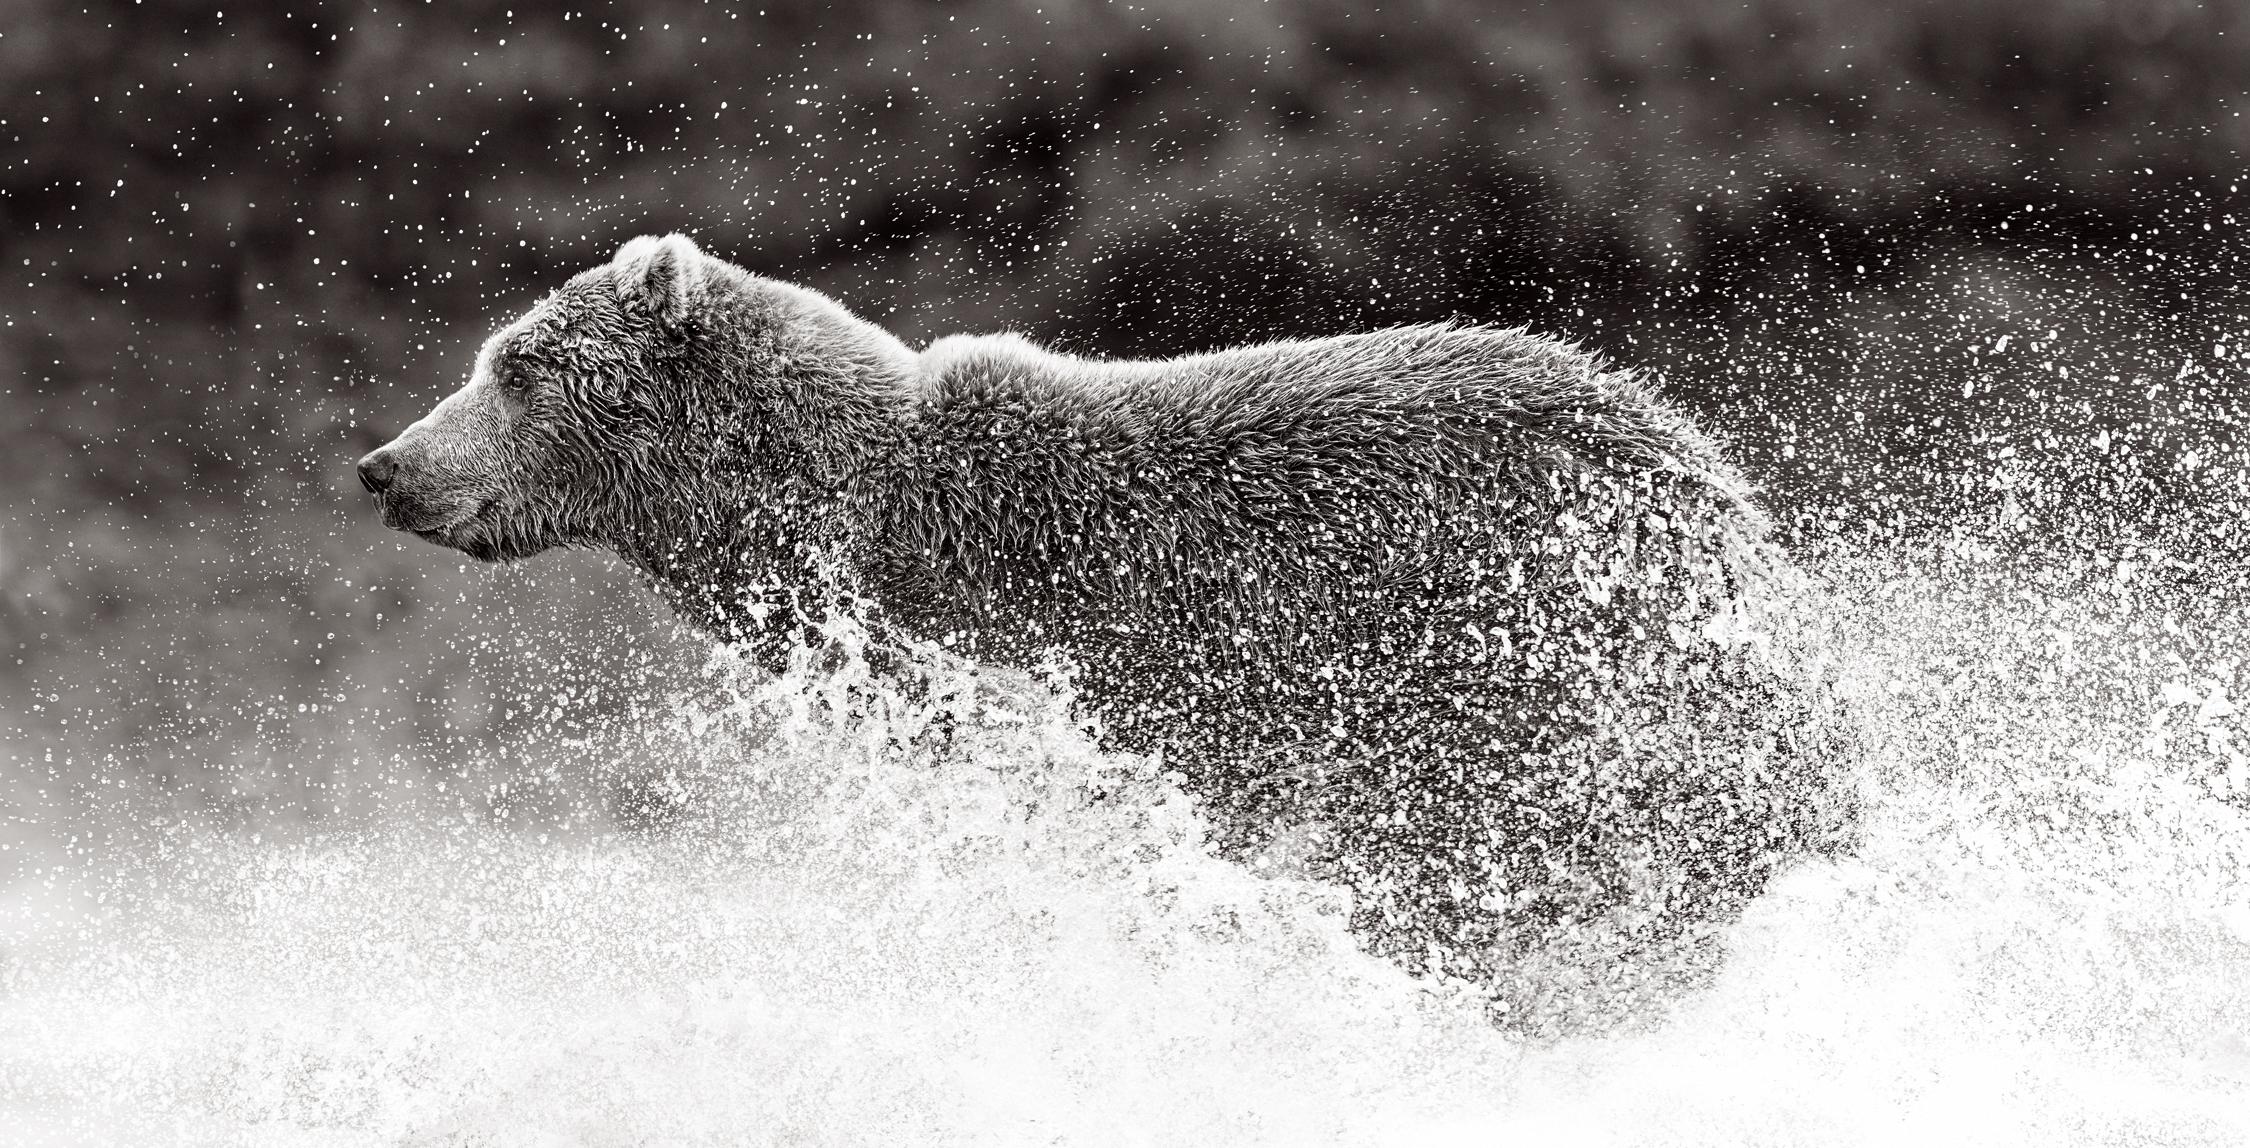 Black and White Photograph Drew Doggett - Image en noir et blanc d'un ours brun courant avec des éclaboussures d'eau autour de lui. 